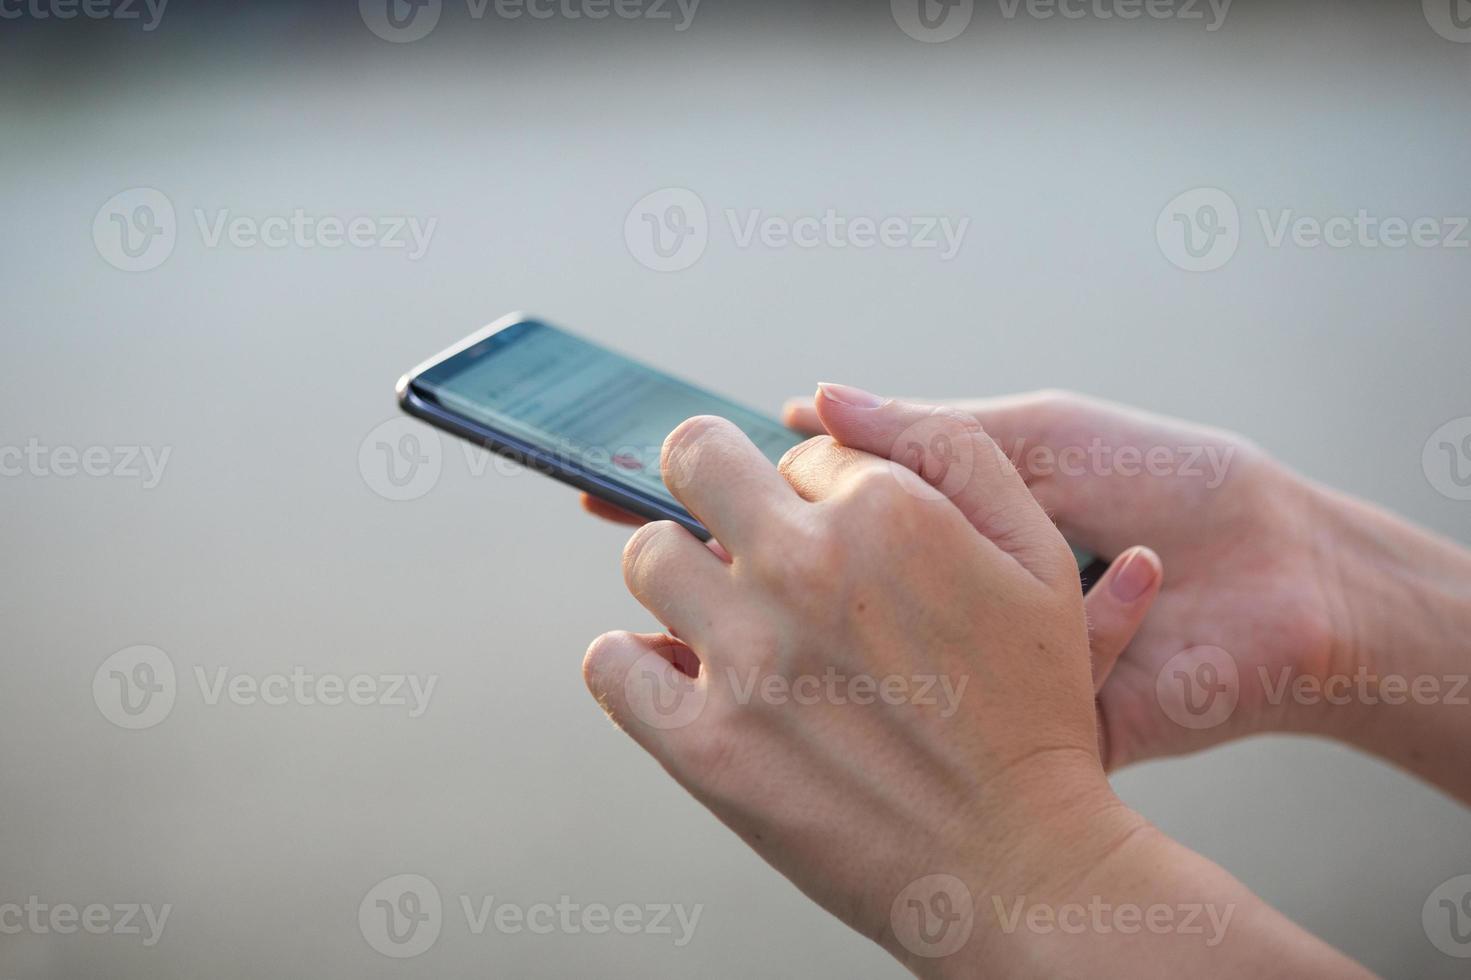 primer plano de las manos de las mujeres sosteniendo un teléfono celular con una pantalla de espacio en blanco para su mensaje de texto publicitario o contenido promocional foto